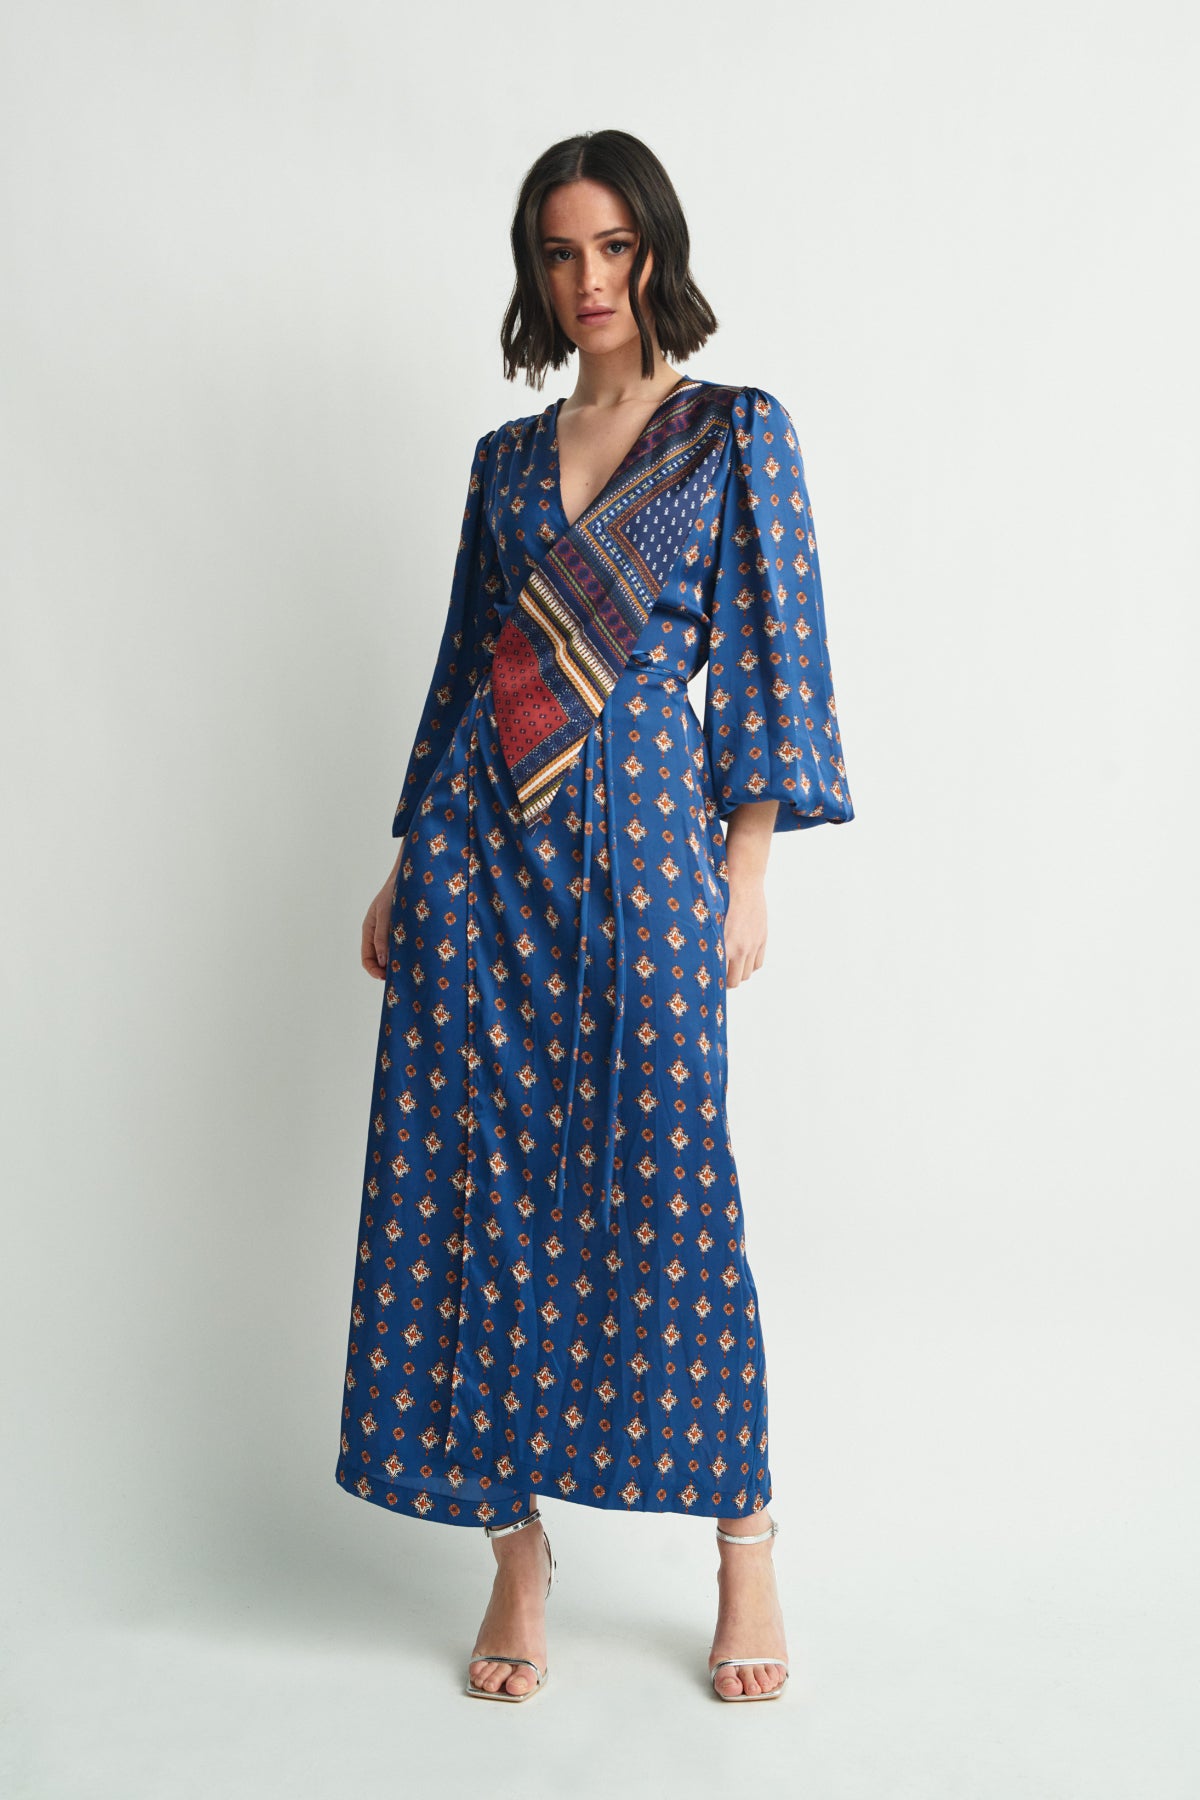 Begué kimono dress